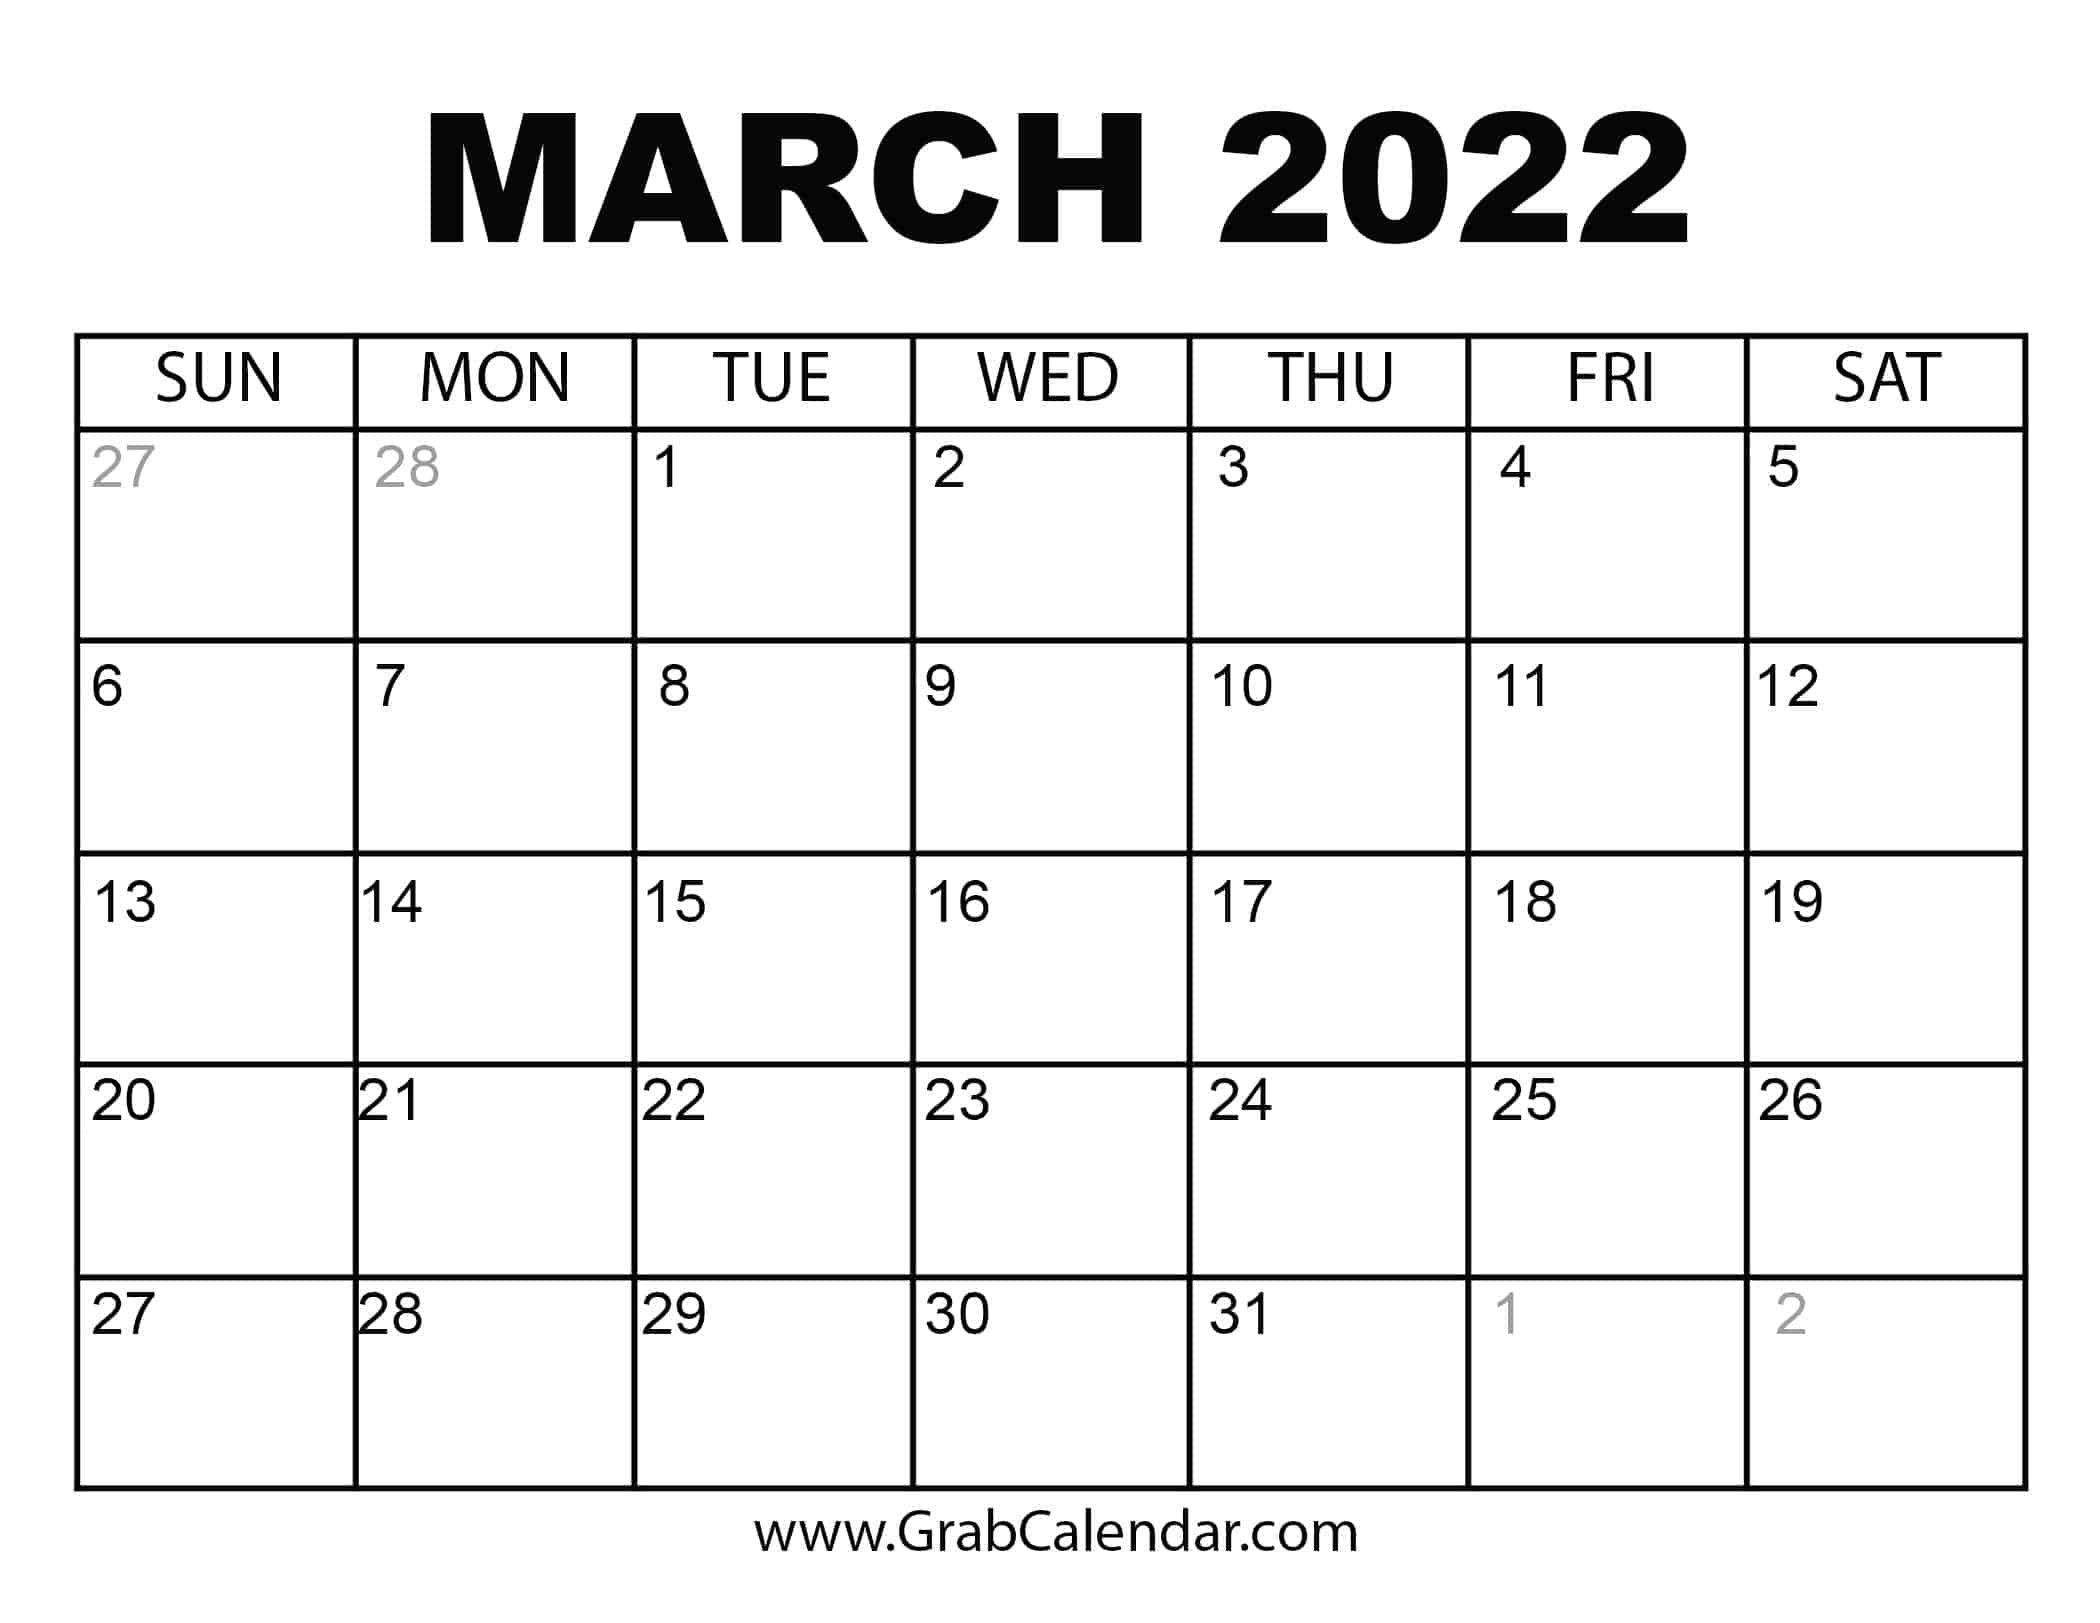 March 2022 Calendar Printable Printable March 2022 Calendar